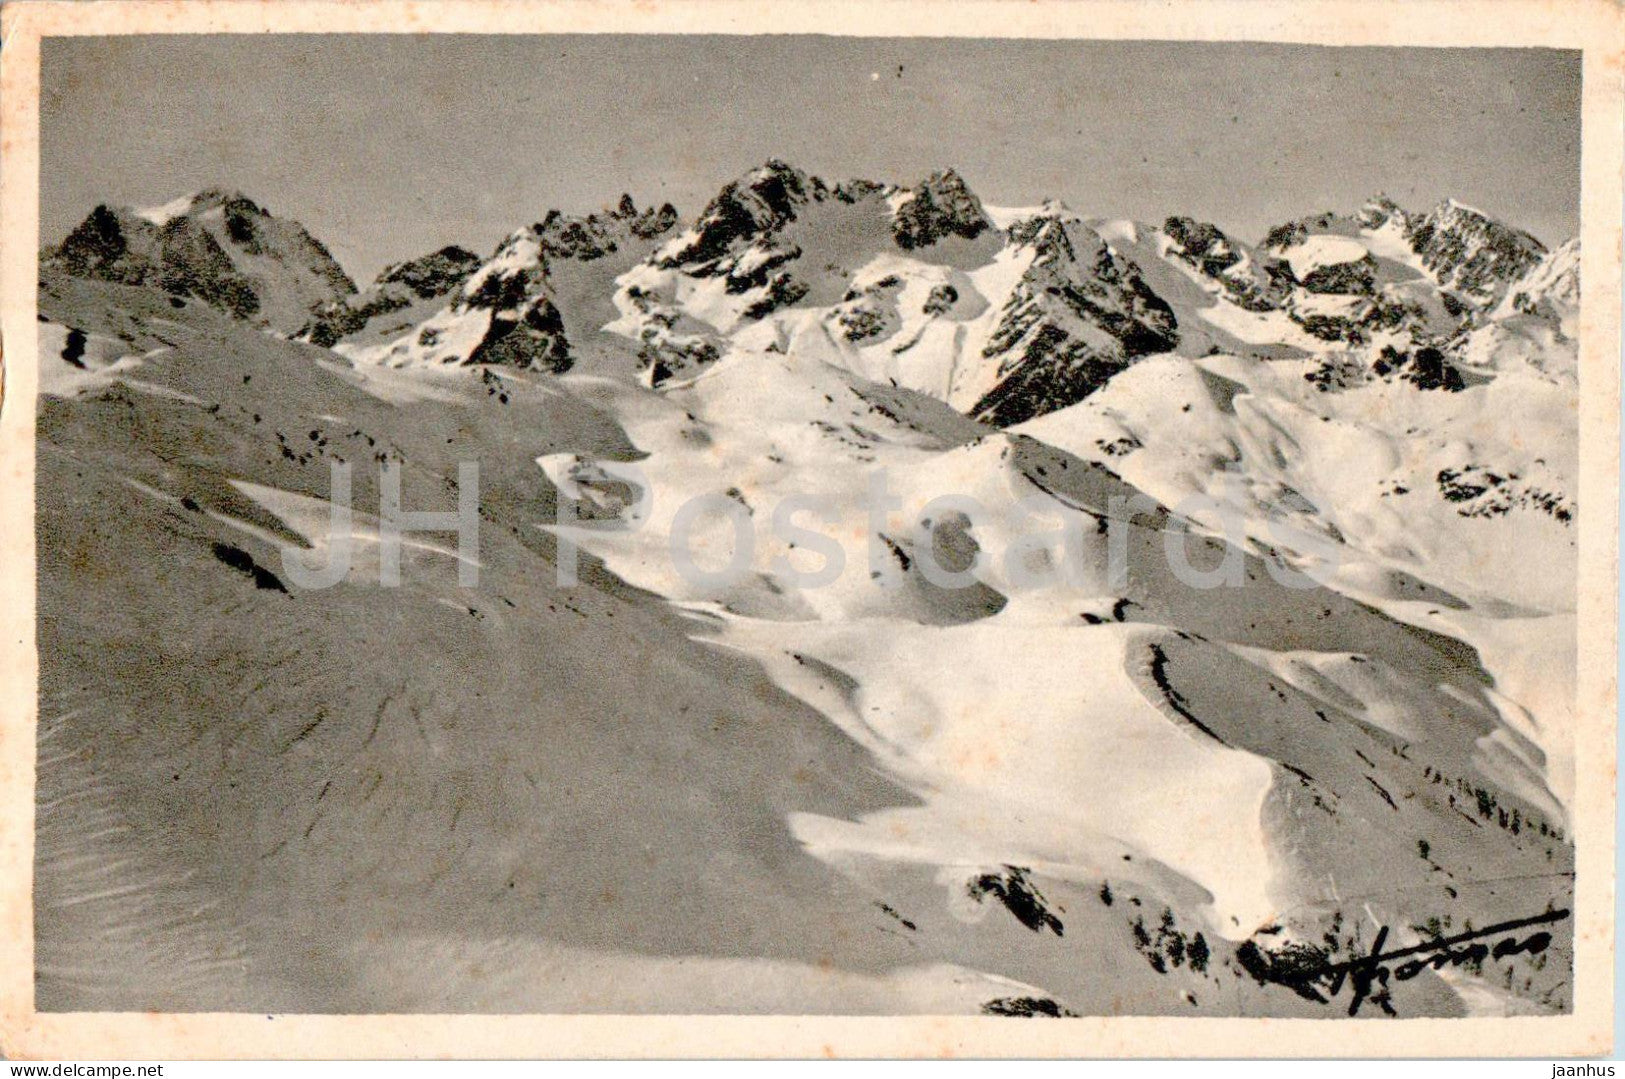 Serre Chevallier - Le Pelvoux et la Chaine des Agneaux - mountains - old postcard - 1948 - France - used - JH Postcards